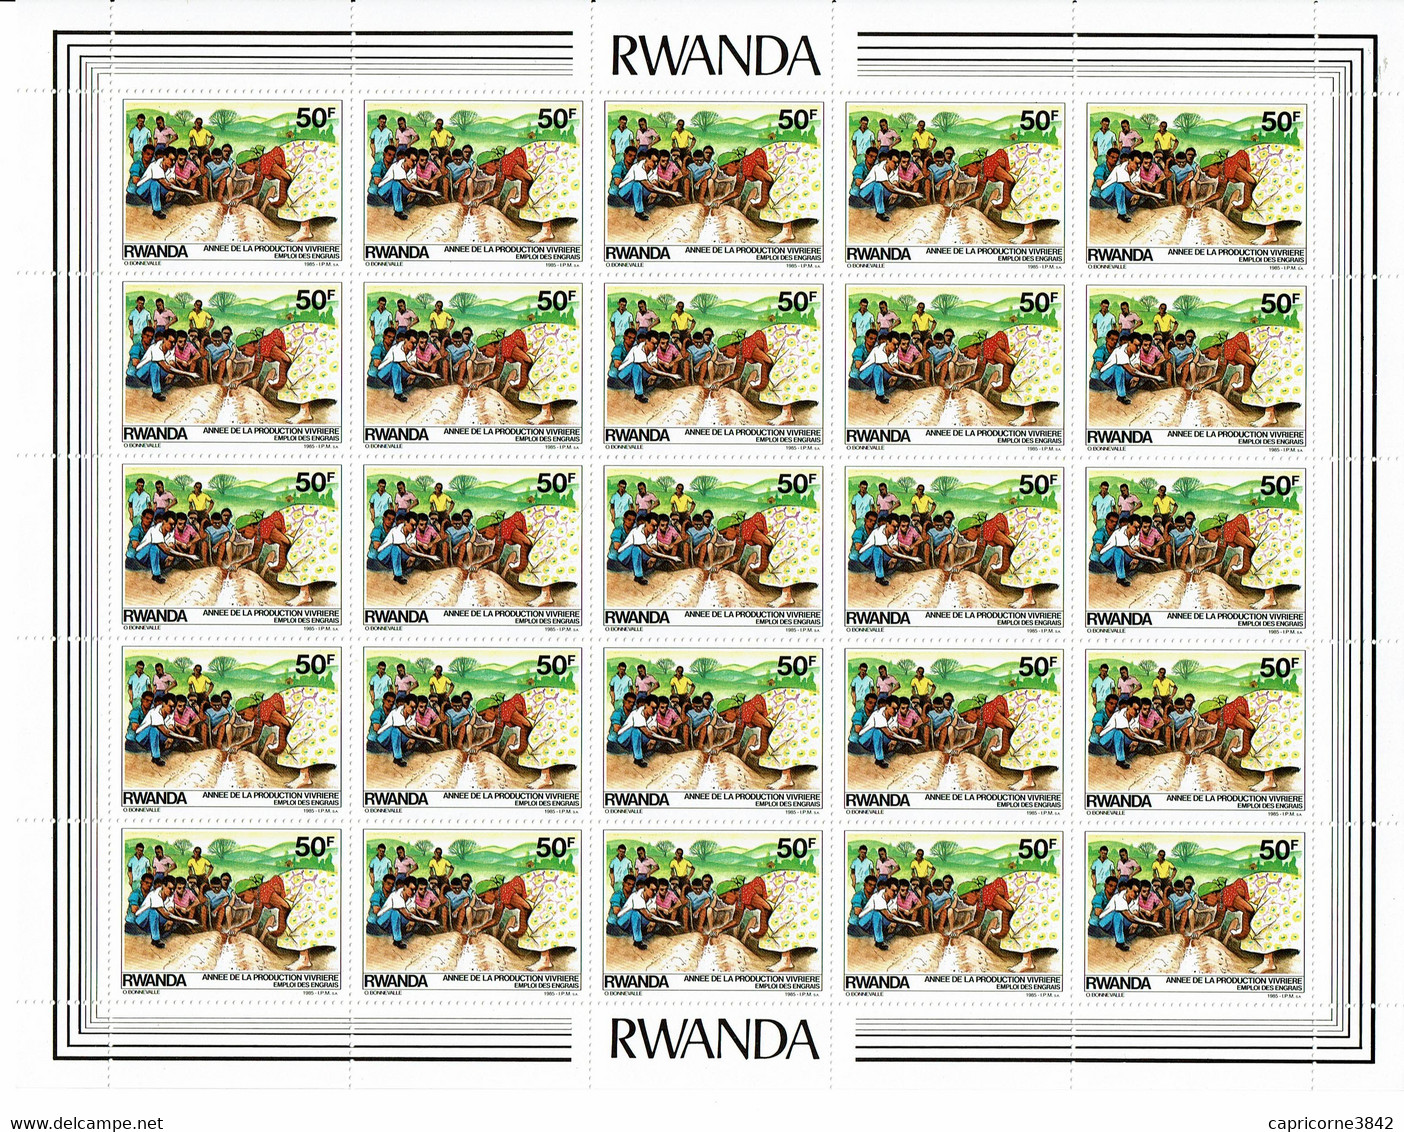 1985 - Rwanda - ANNEE DE LA PRODUCTION VIVRIERE - EMPLOI DES ENGRAIS - Feuille Entière De 25 Tp N° 1170 - Ungebraucht